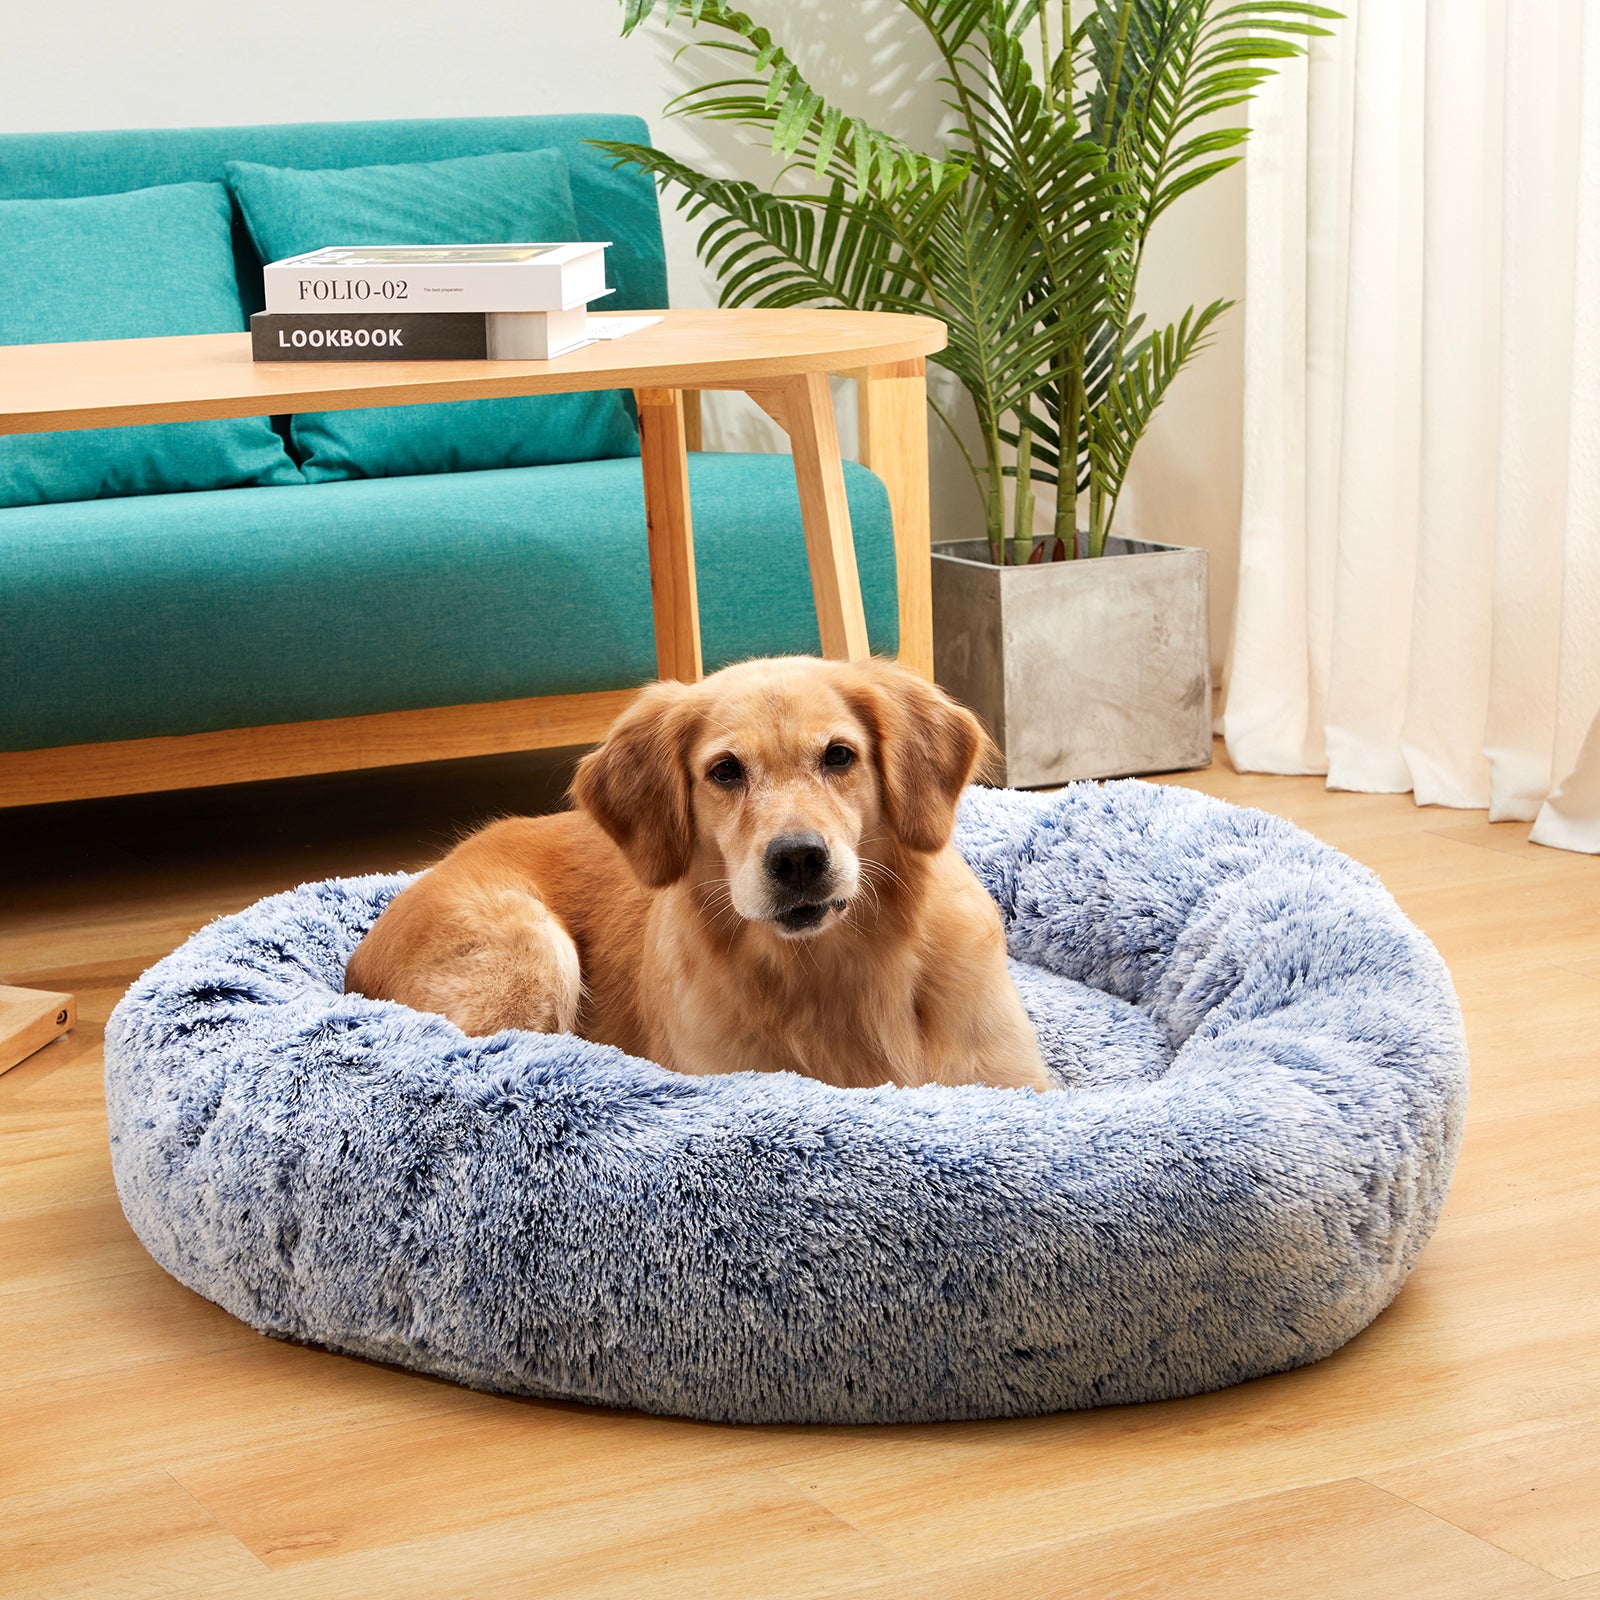 Bedfolks Calming Donut Dog Cuddler Bed， 36